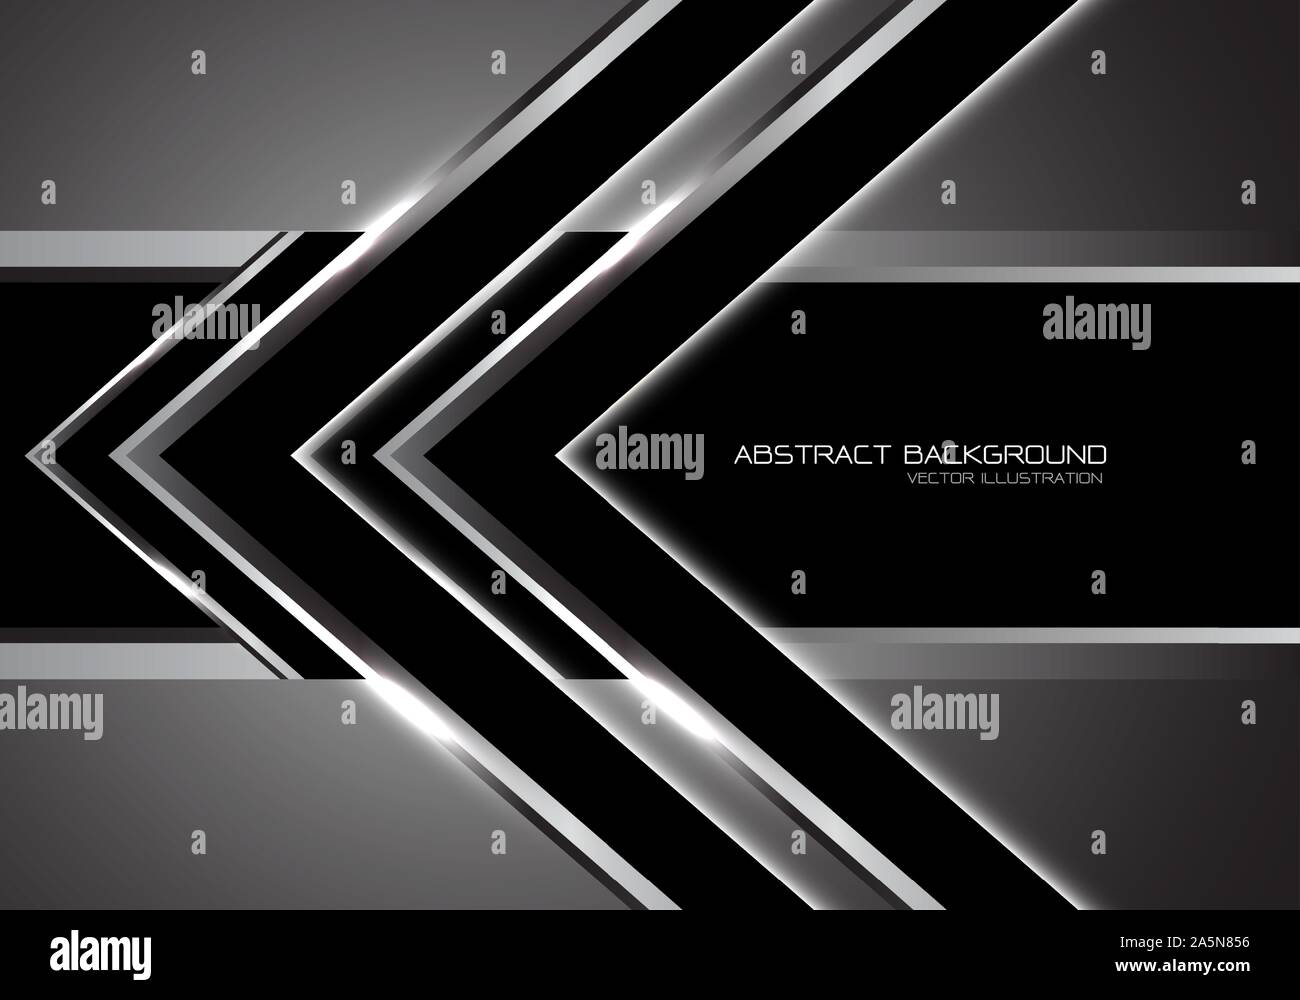 Abstrakte Silver Arrow Geschwindigkeit Richtung auf Schwarz banner Leerzeichen Design moderner Luxus futuristische Technologie Hintergrund Vector Illustration. Stock Vektor